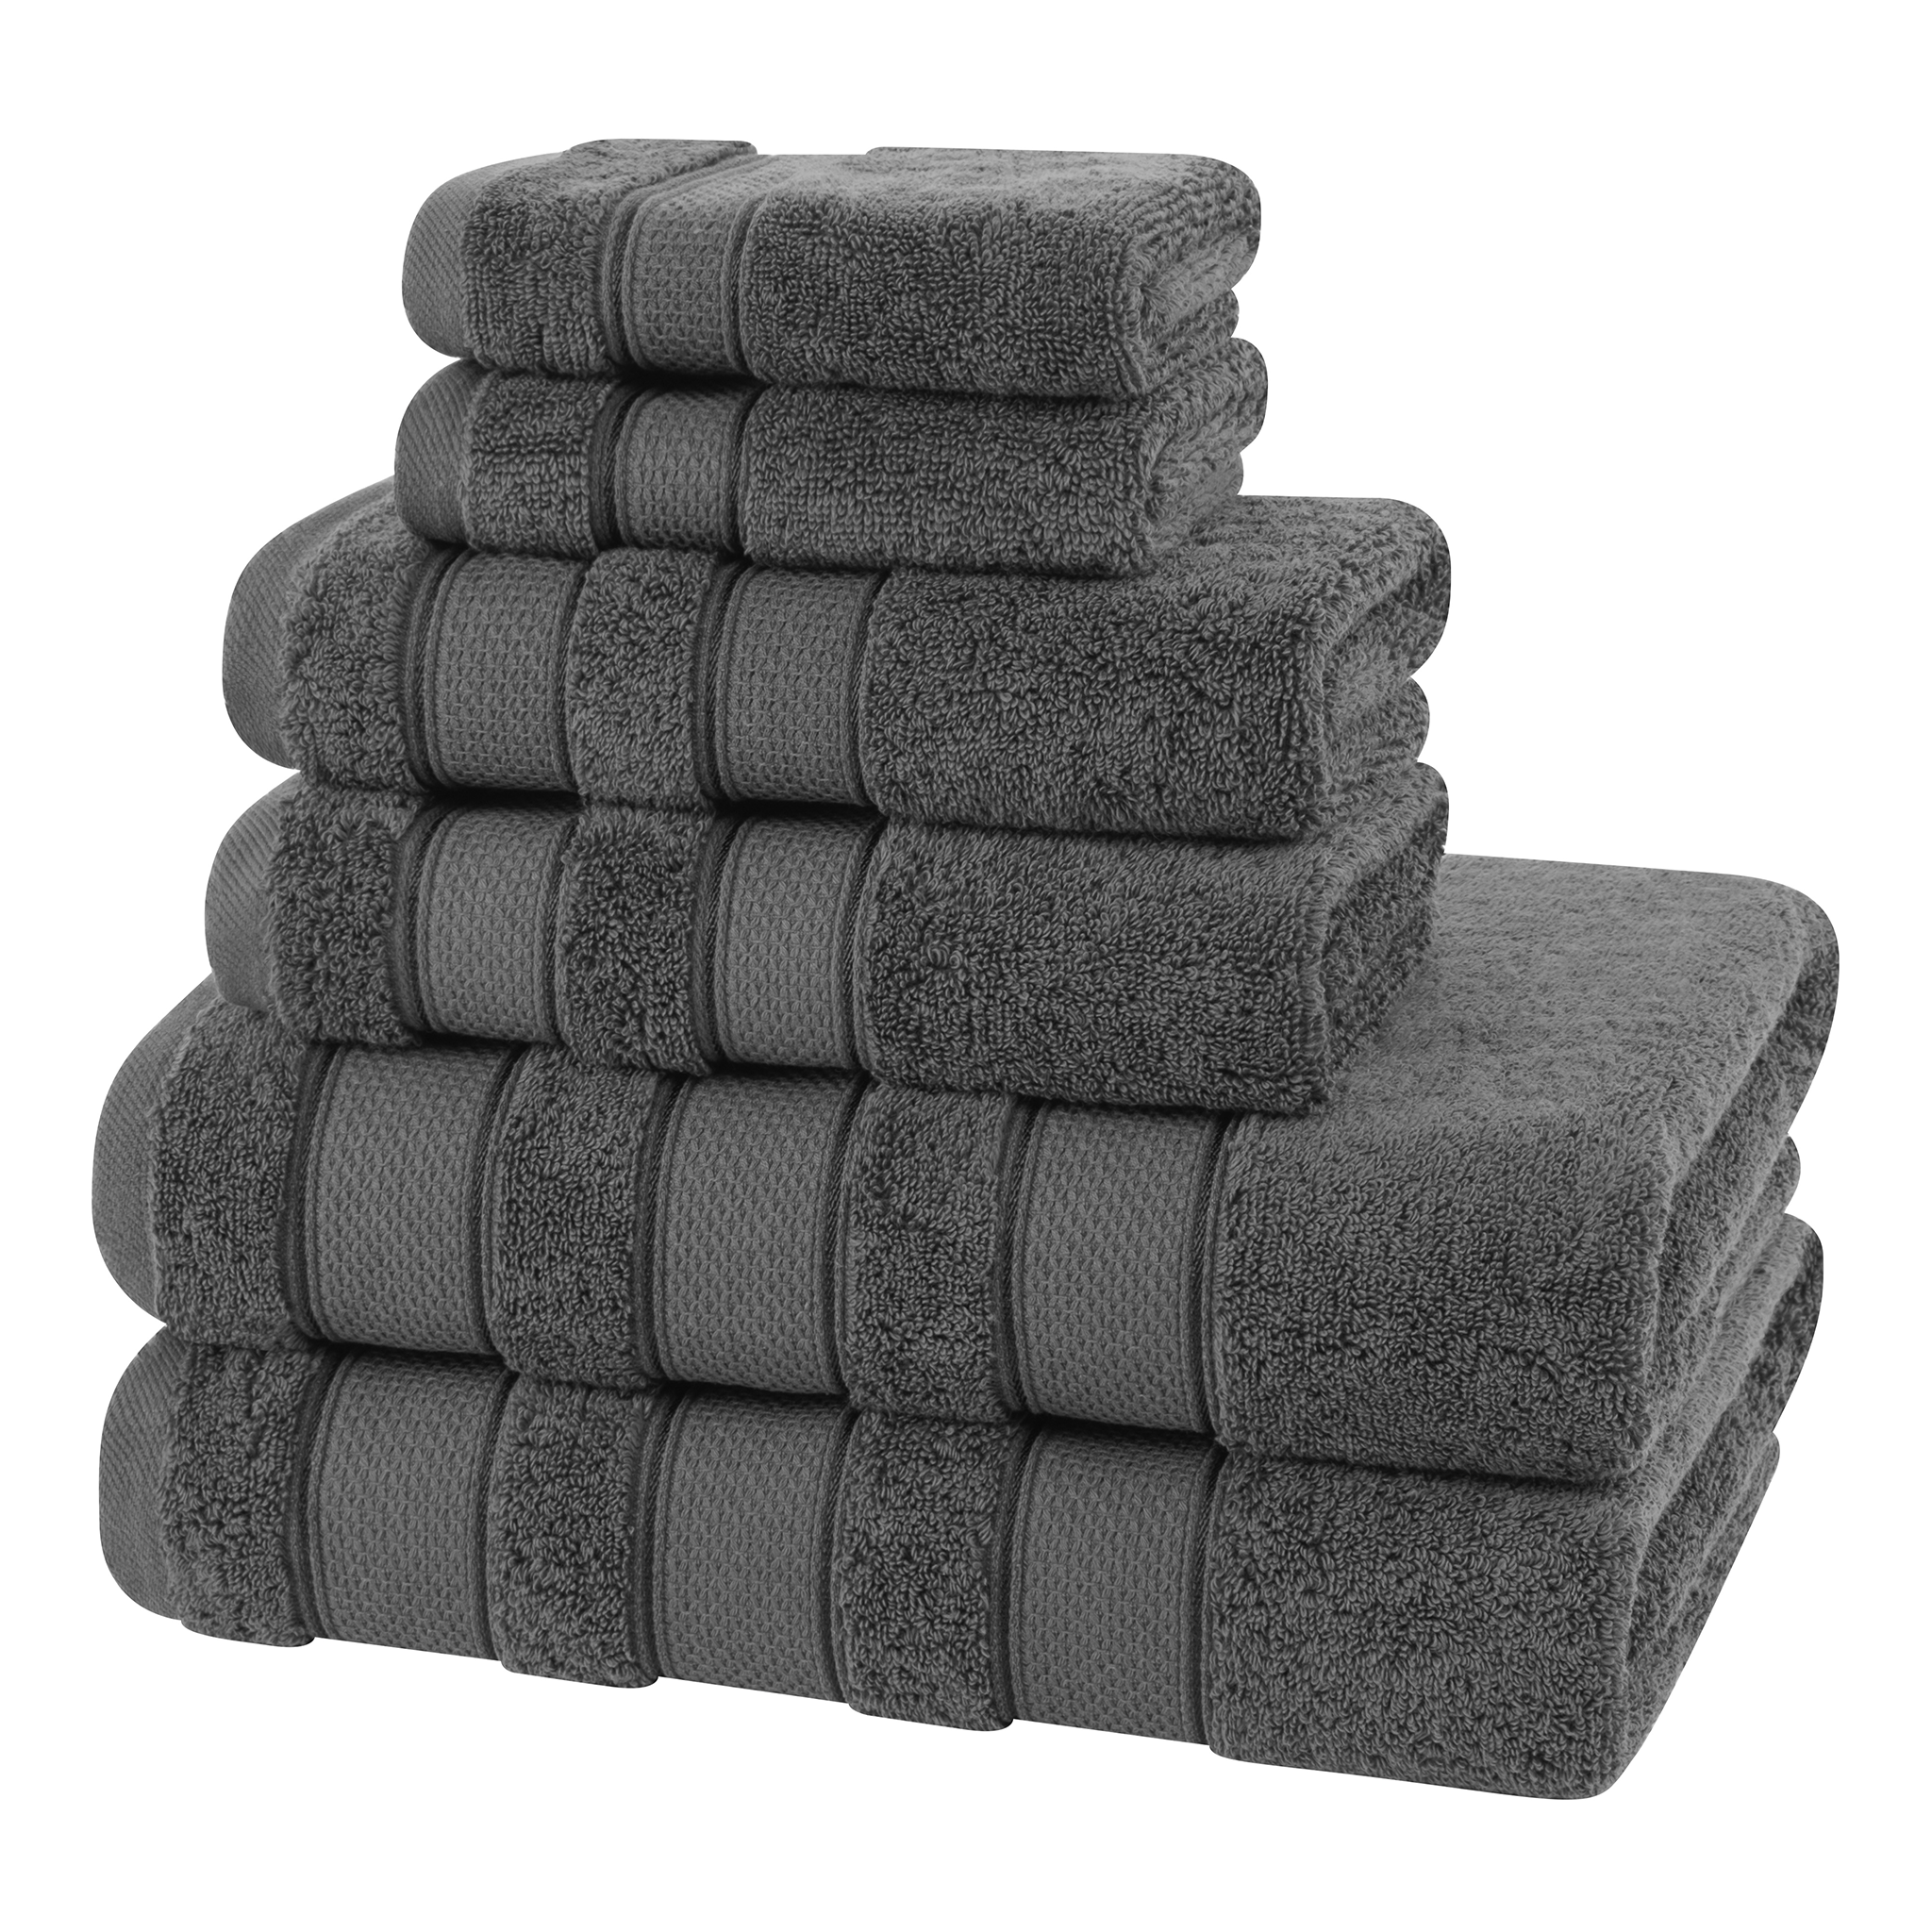 LUXURY 100% COTTON 6 PCS BATH TOWELS SET - HOTEL SPA BATHROOM. FACE TOWELS.